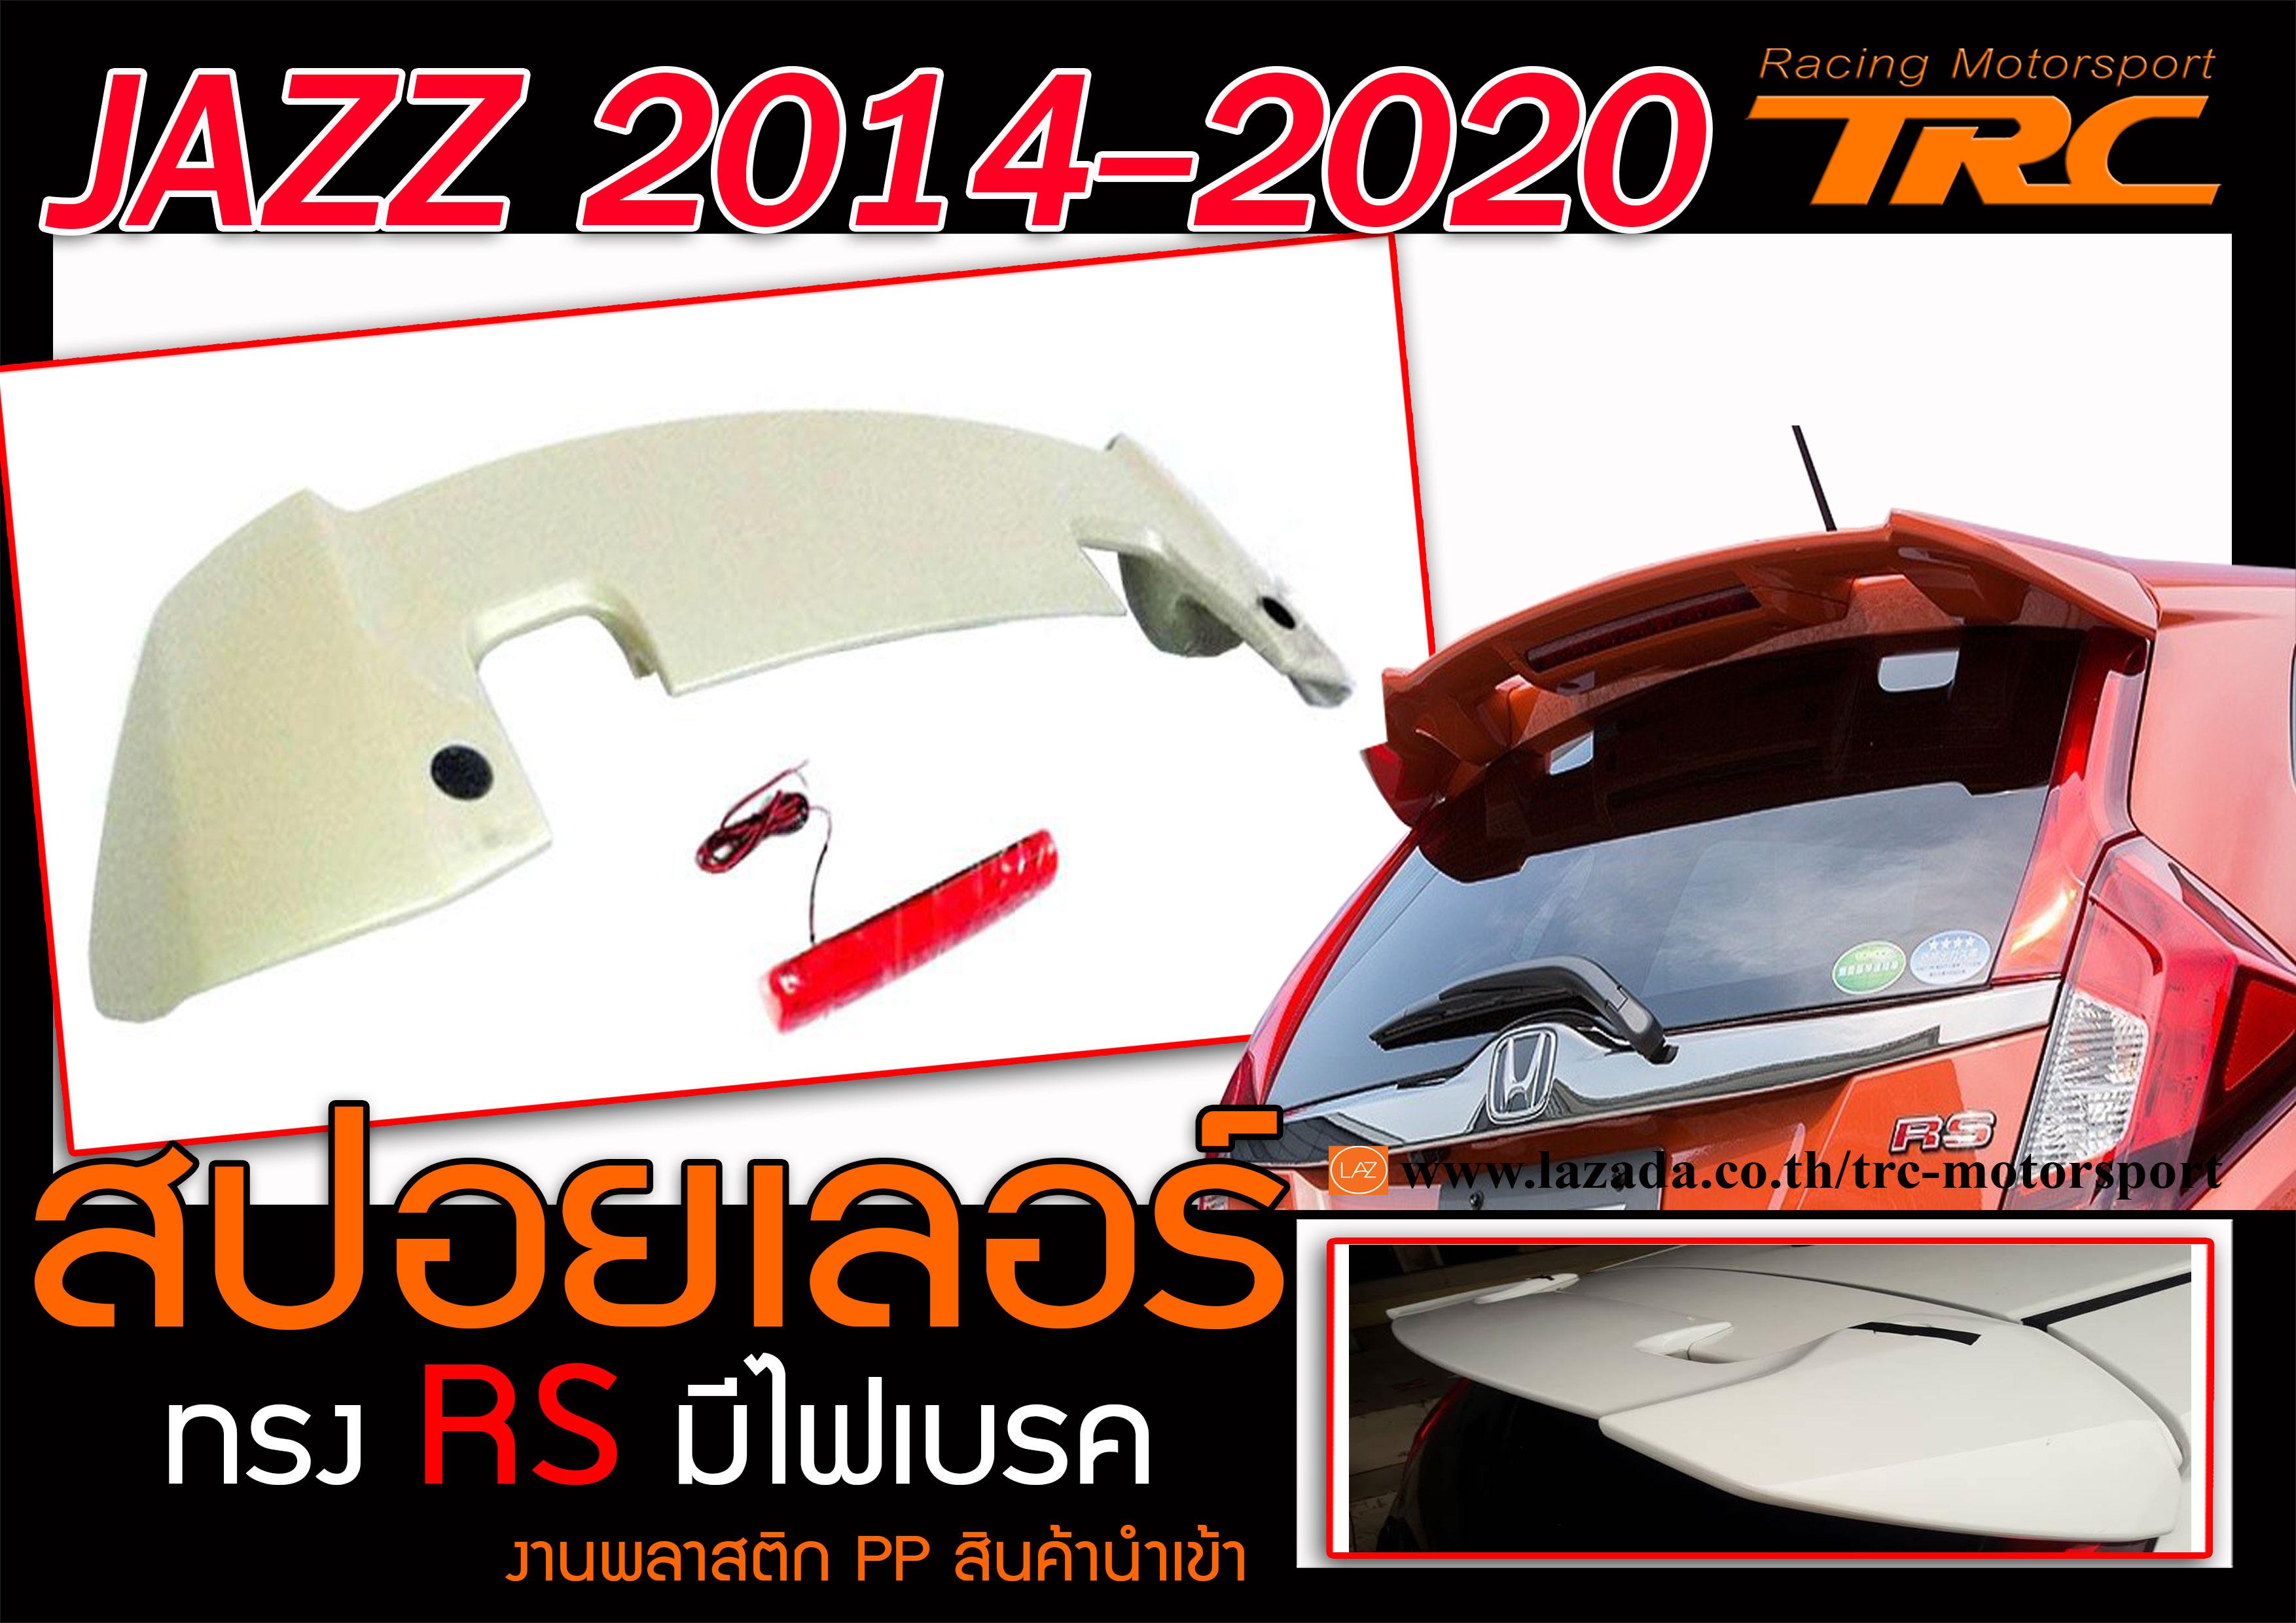 JAZZ 2014-2020 สปอยเลอร์ ทรง R.S มีไฟเบรค งานพลาสติก PP สินค้านำเข้า